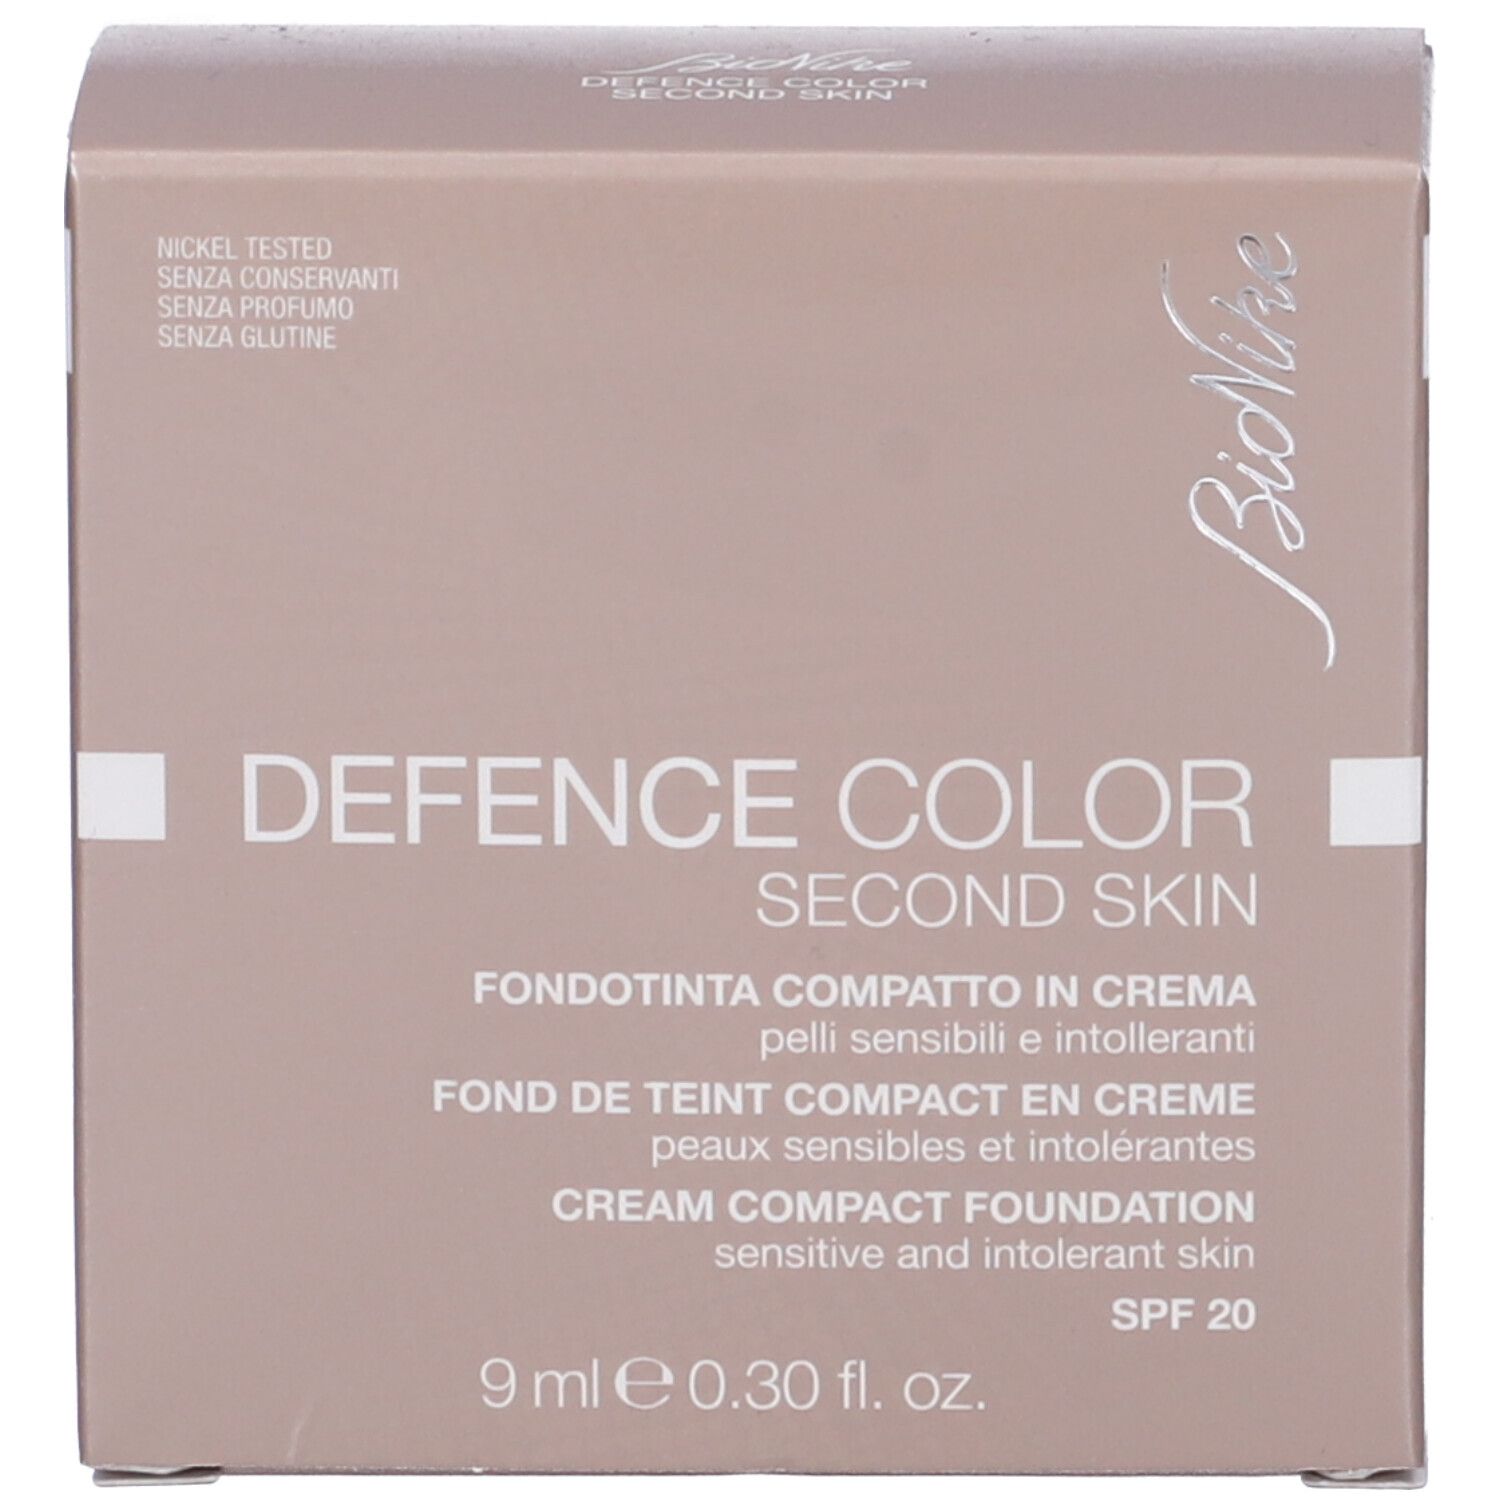 BioNike Defence Color Second Skin Fondotinta Compatto 501 Sabbia